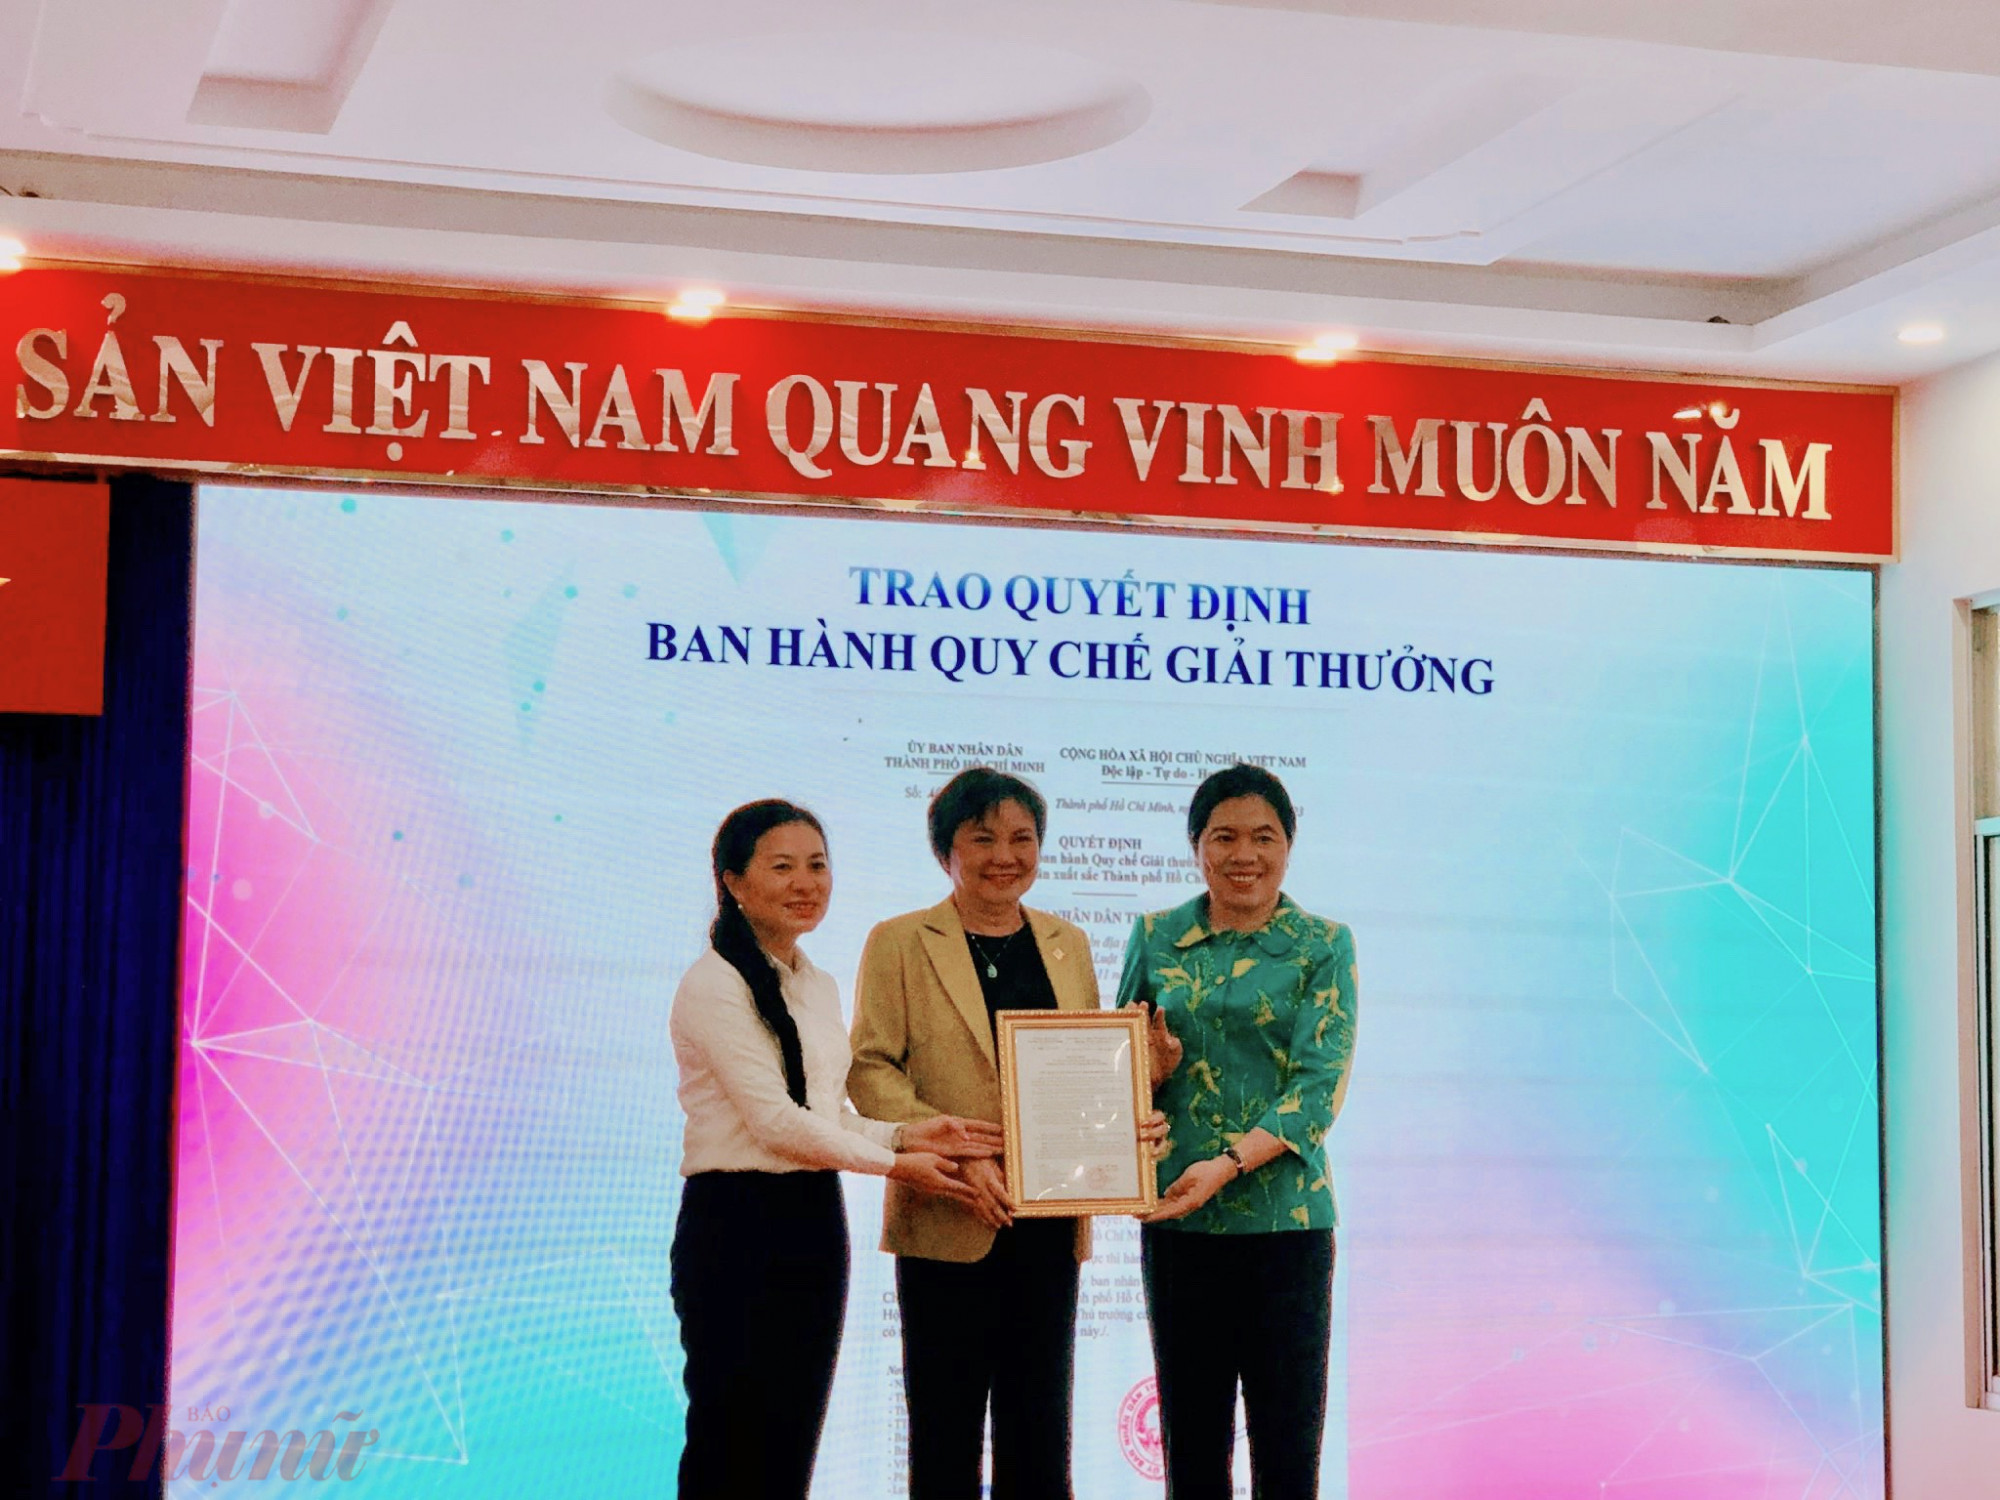 bà Phan Kiều Thanh Hương – Phó giám đốc Sở Nội vụ TPHCM (bên trái) trao quyết định quy chế giải thưởng cho Hawee và Hội LHPN TPHCM